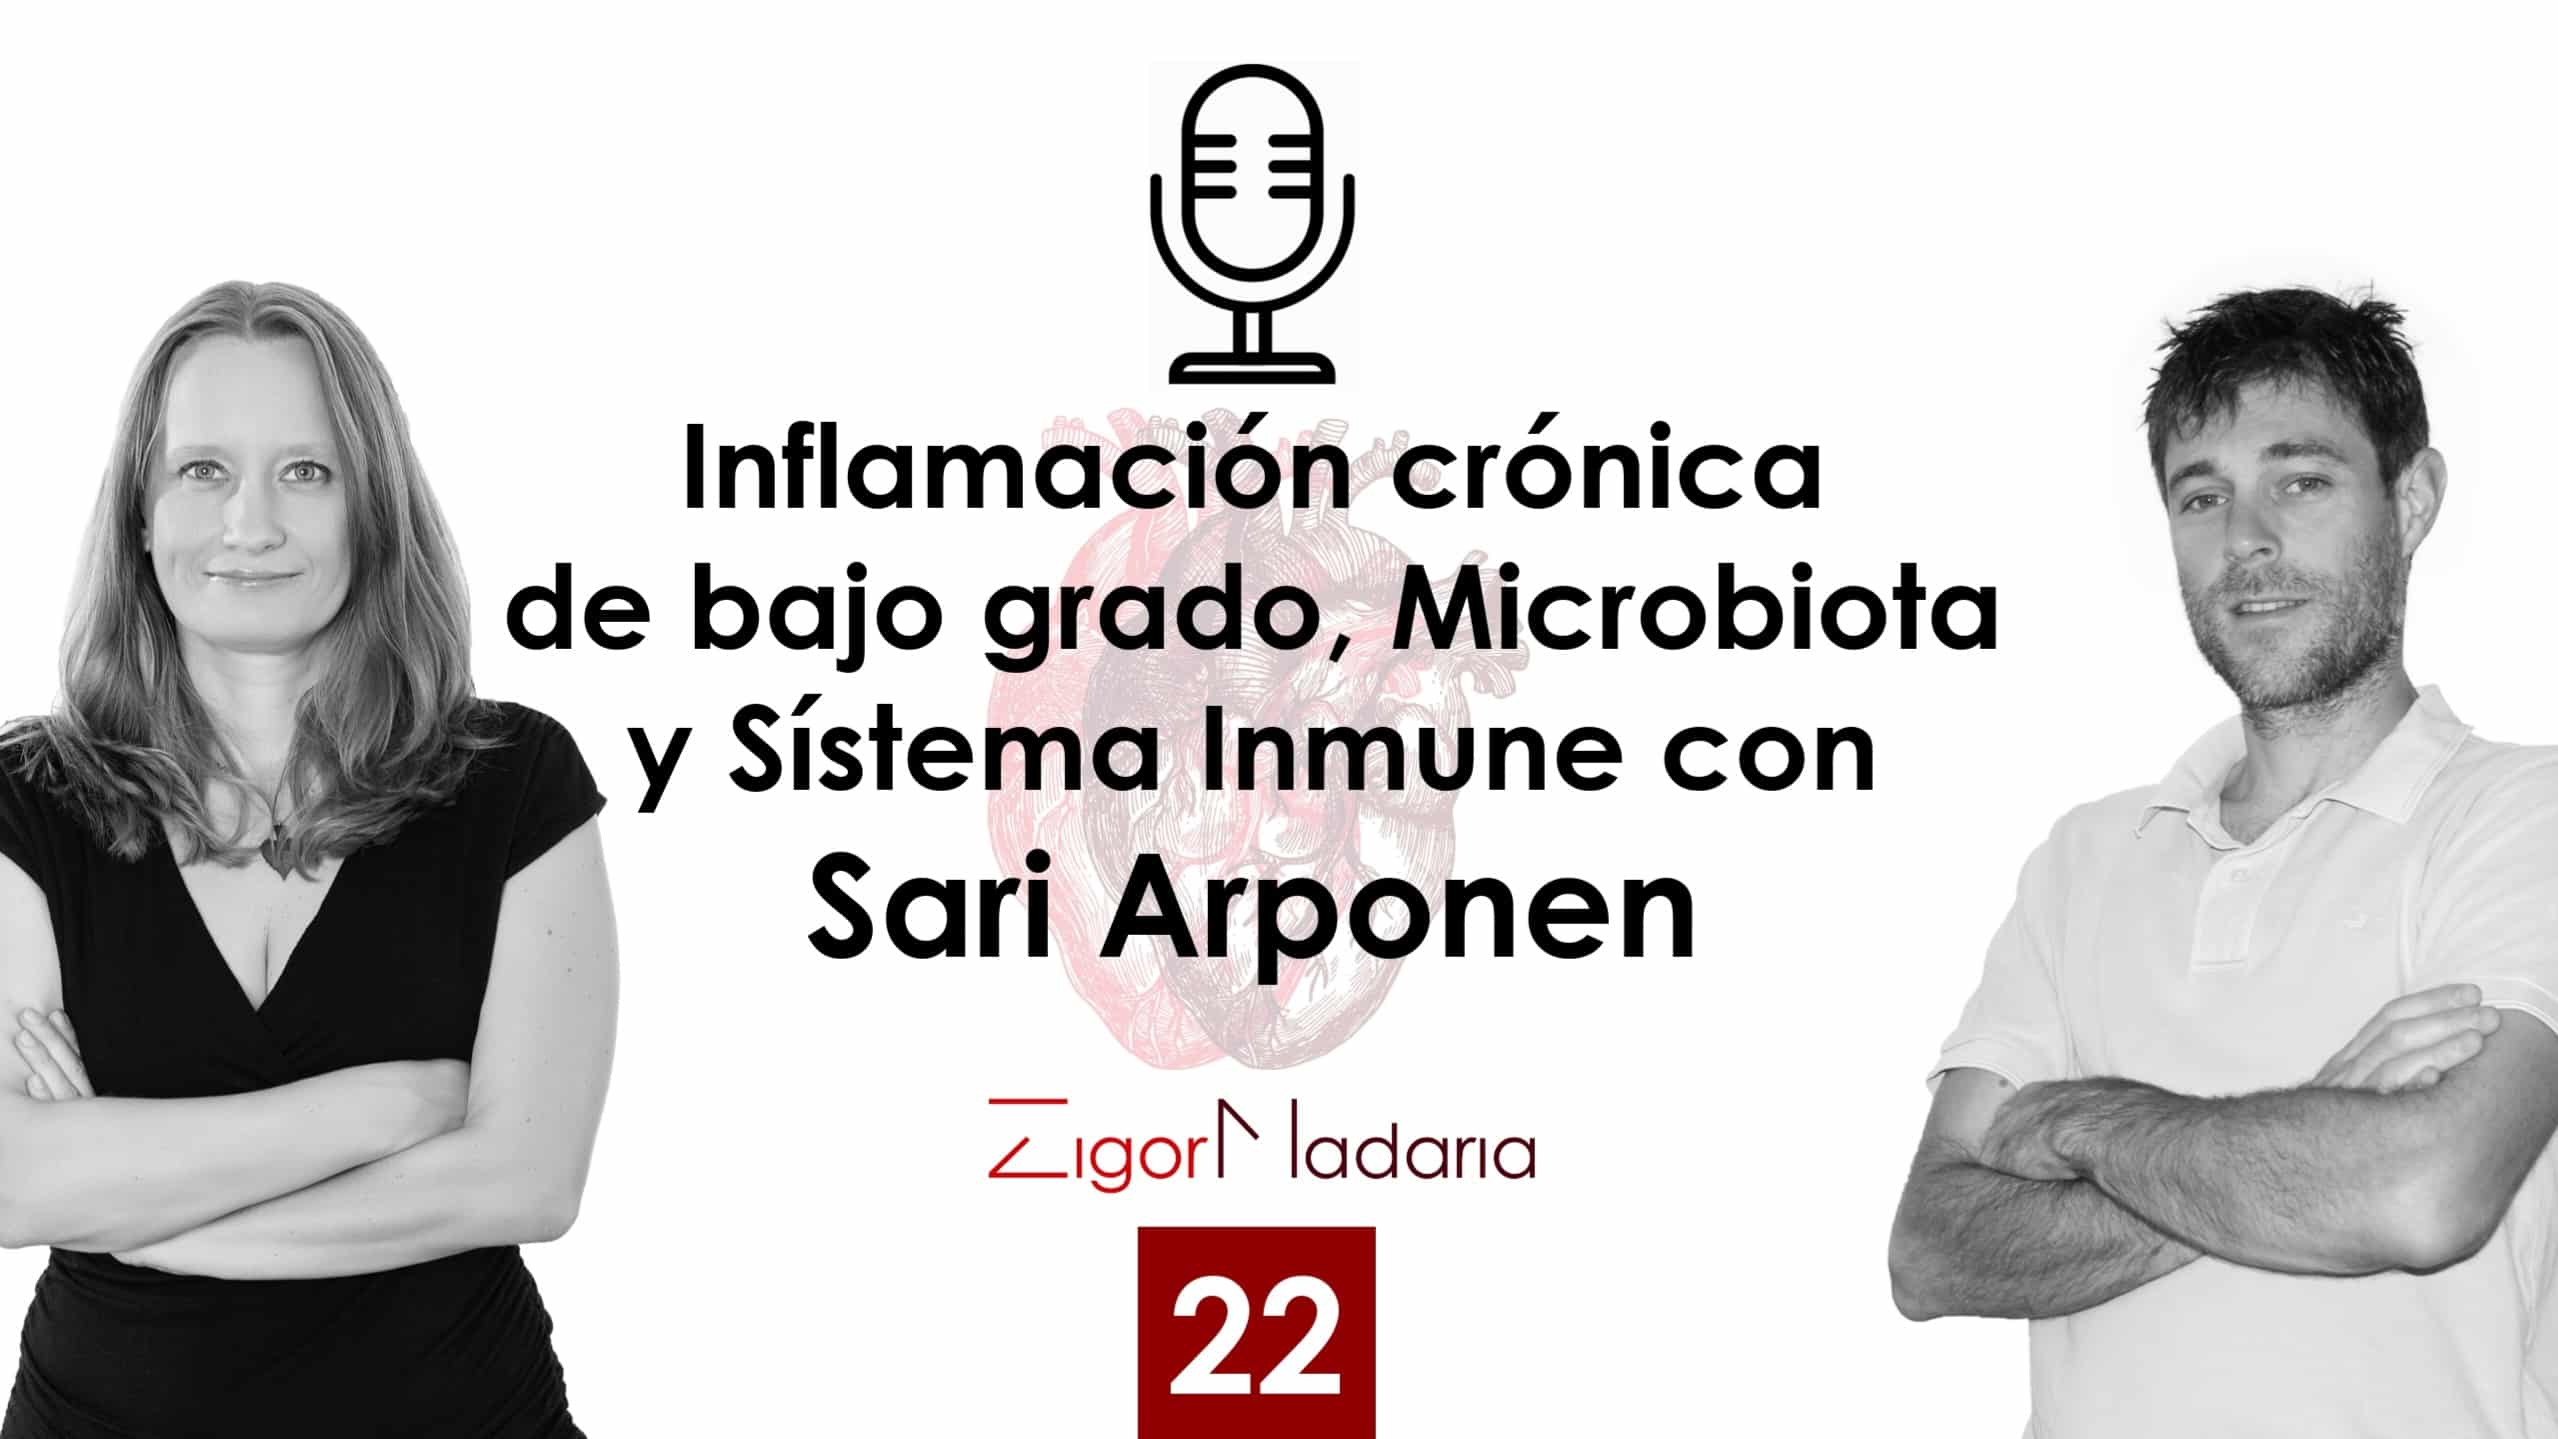 Inflamación crónica de bajo grado, sistema inmune y microbiota con Sari Arponen